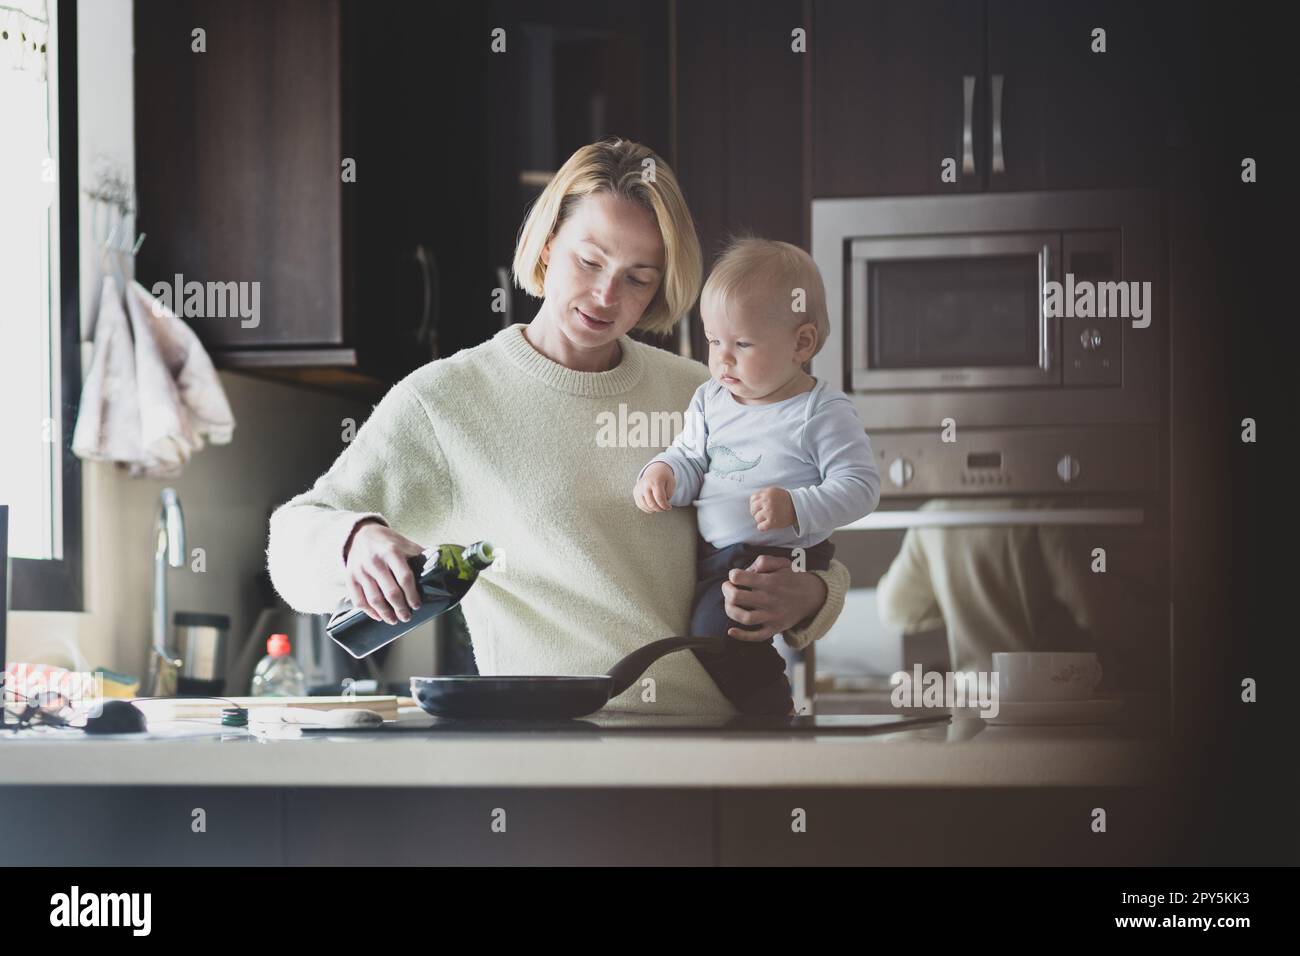 Glückliche Mutter und kleiner kleiner Junge, die zusammen Pfannkuchen zum Frühstück in der Hausküche machen. Familie, Lebensstil, häusliches Leben, Essen, gesunde Ernährung und Menschen Konzept. Stockfoto